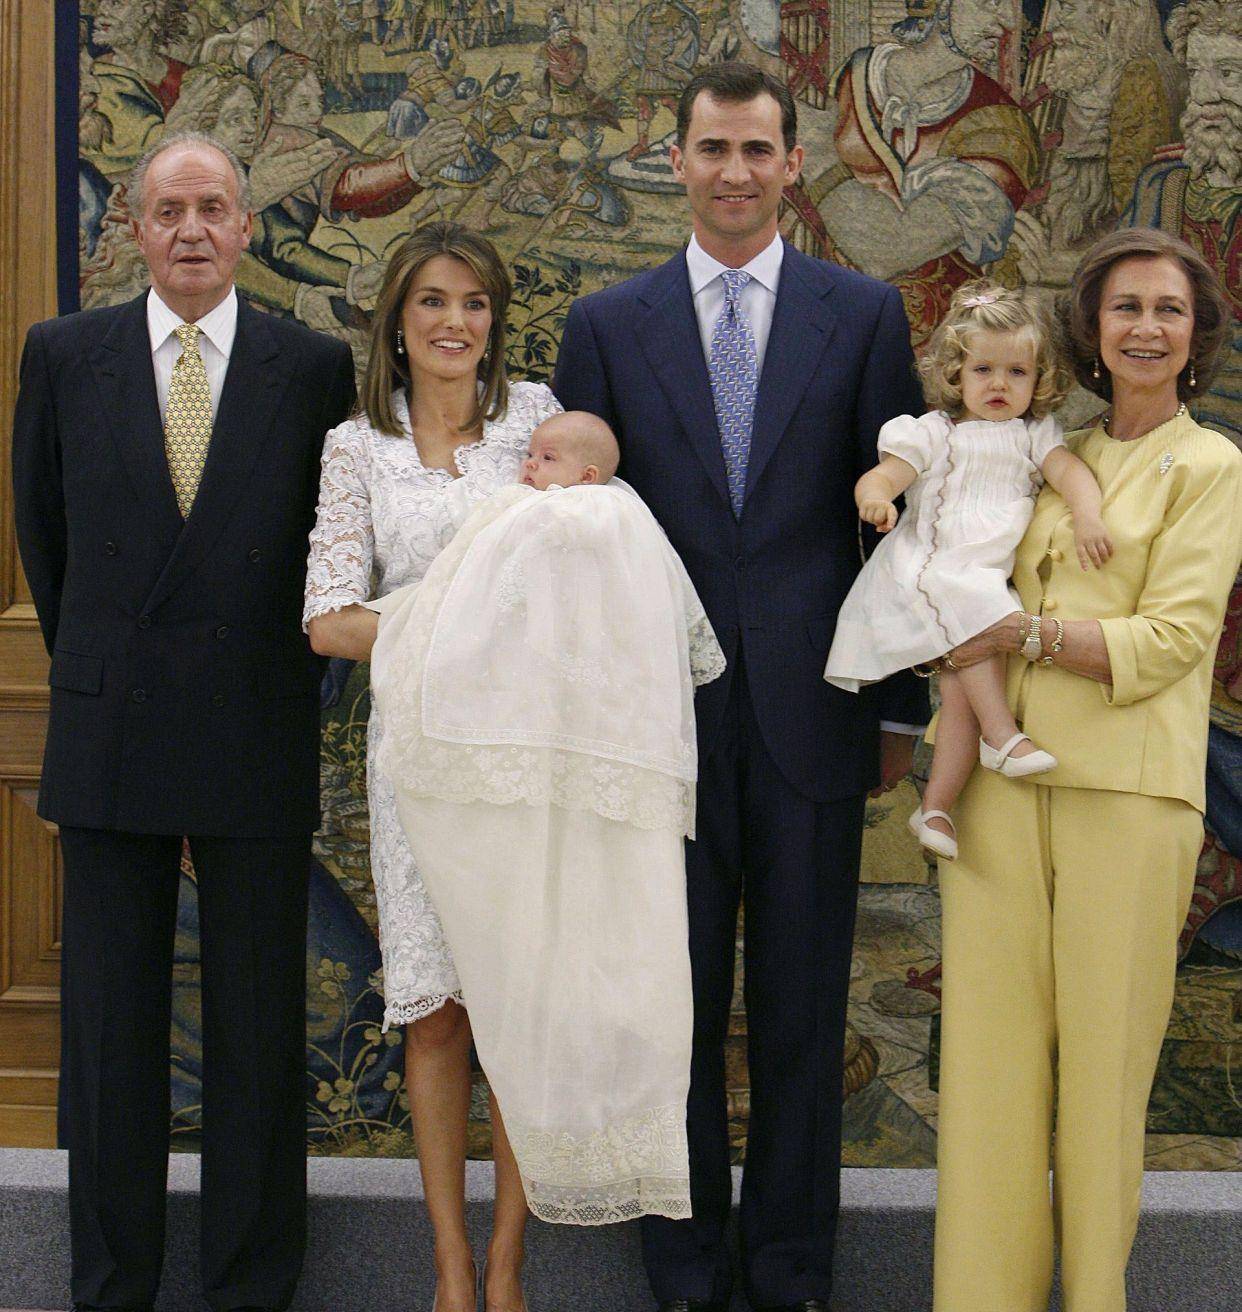 原创西班牙王室婆媳问题早有隐患,看王室早期合影就知道了